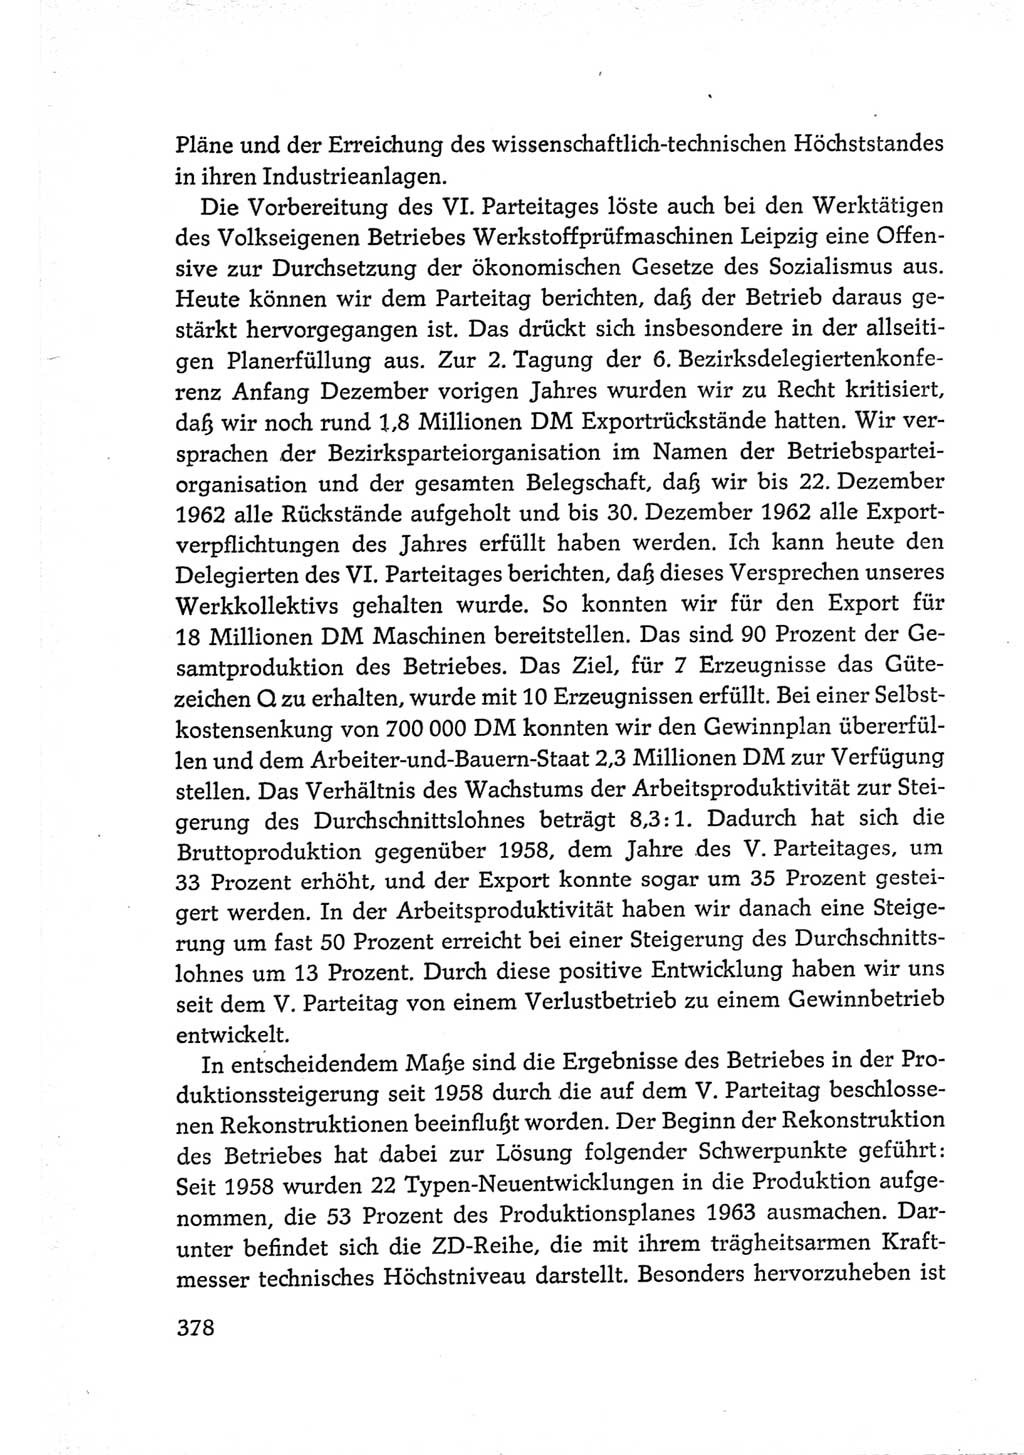 Protokoll der Verhandlungen des Ⅵ. Parteitages der Sozialistischen Einheitspartei Deutschlands (SED) [Deutsche Demokratische Republik (DDR)] 1963, Band Ⅲ, Seite 378 (Prot. Verh. Ⅵ. PT SED DDR 1963, Bd. Ⅲ, S. 378)